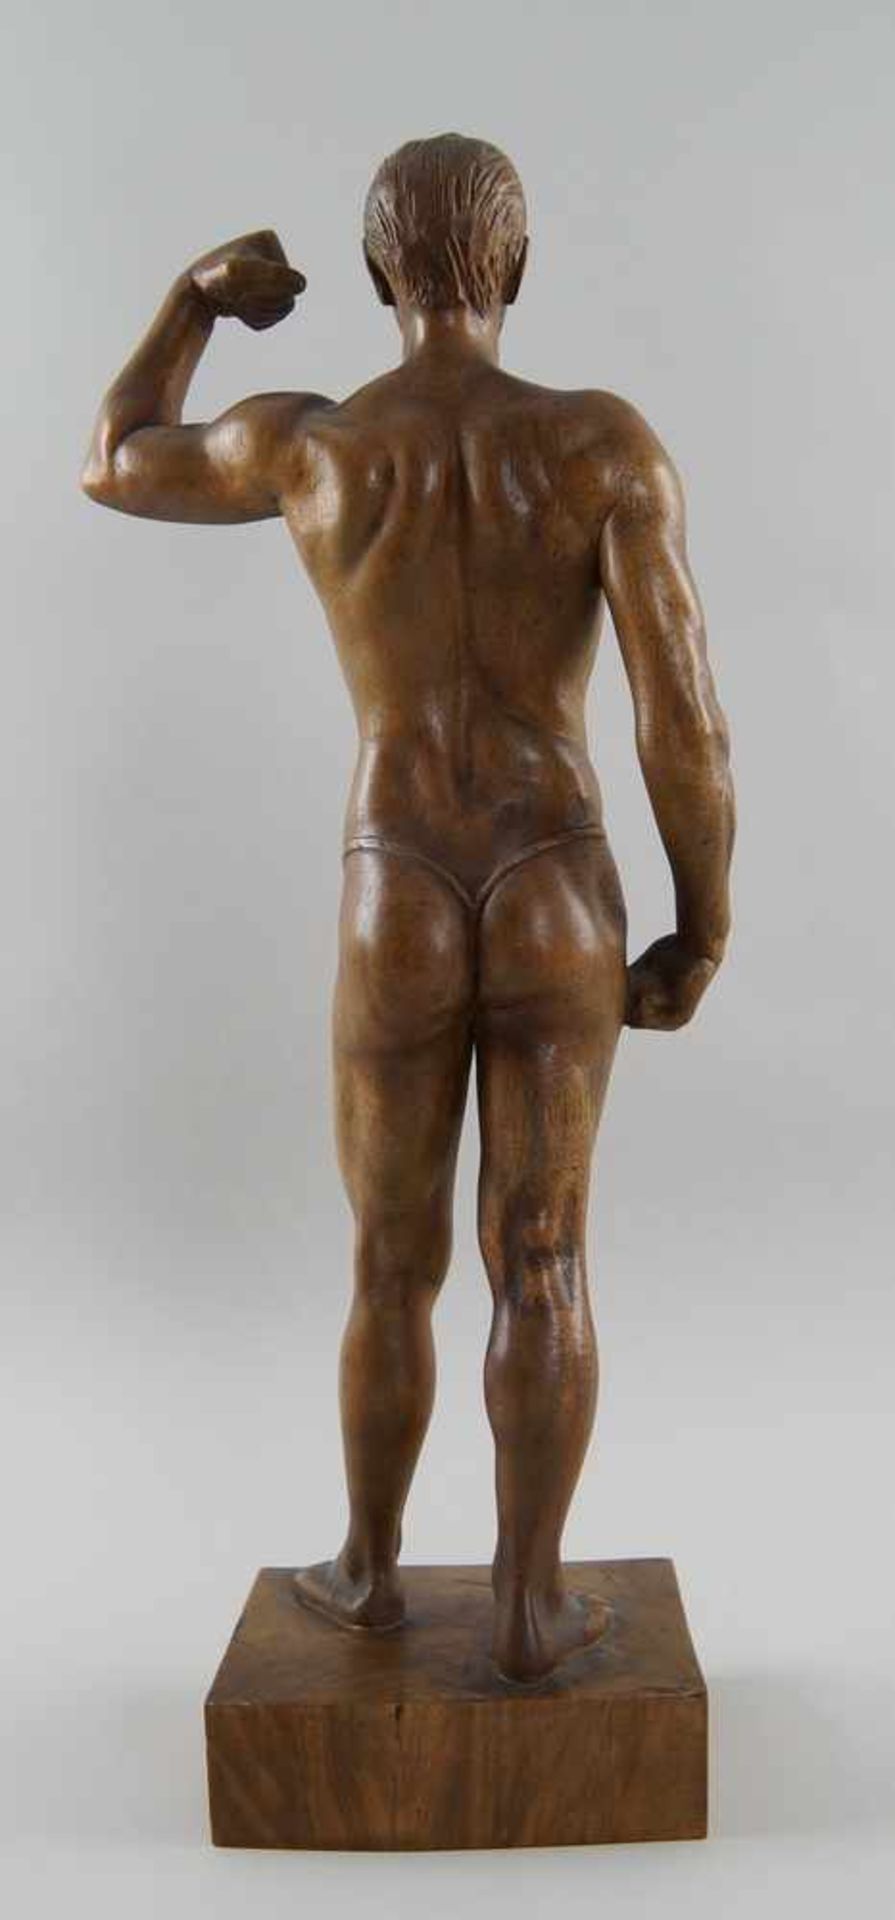 Stehender, muskulöser Mann mit einem String, Holz geschnitzt, signiert, H 52 cm - Bild 6 aus 7